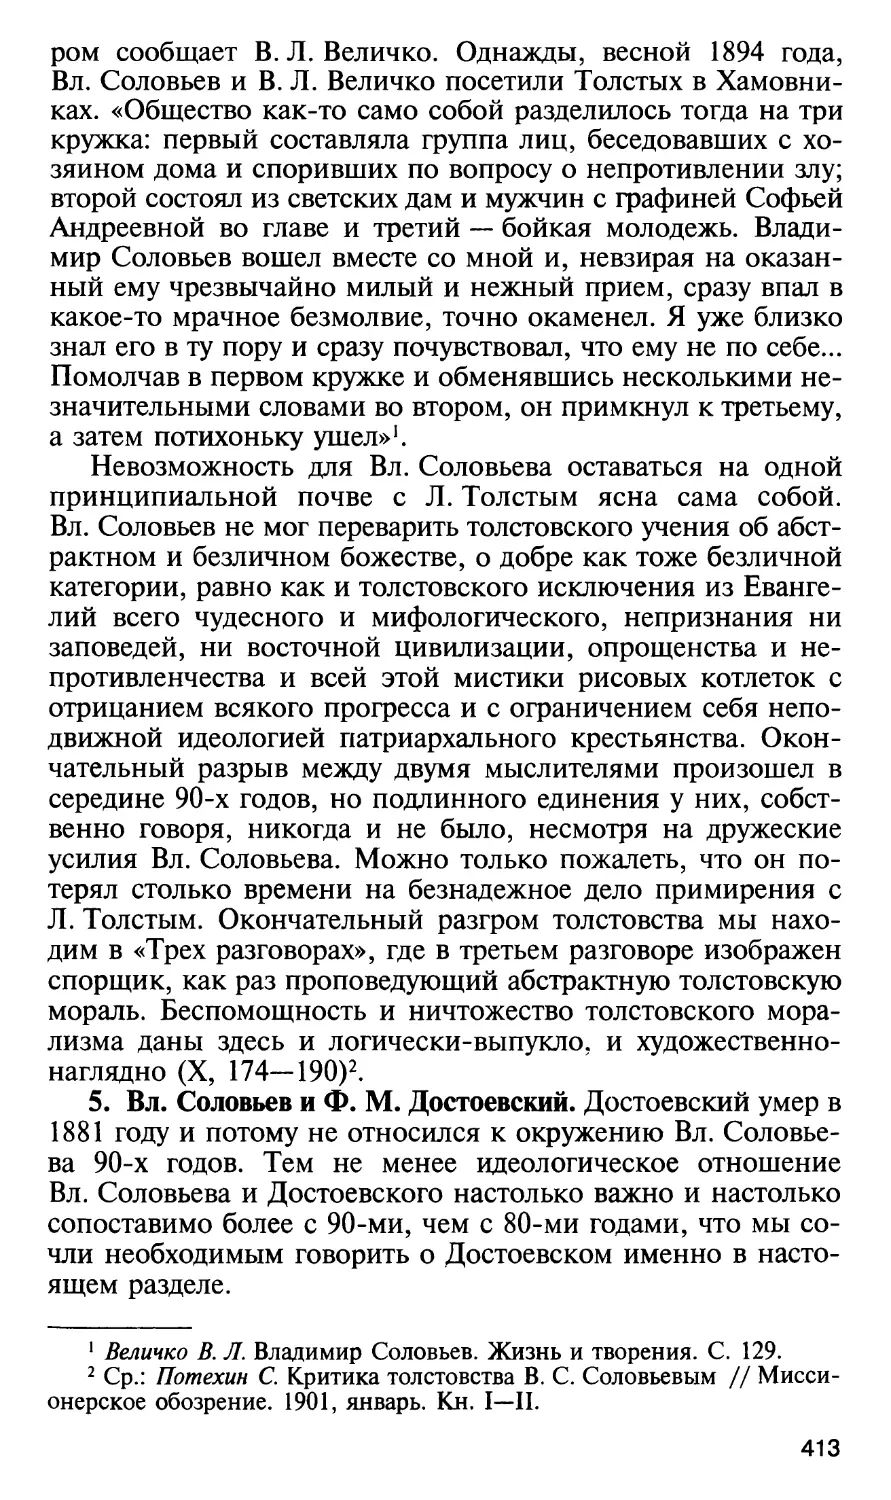 5. Вл. Соловьев и Ф. М.Достоевский